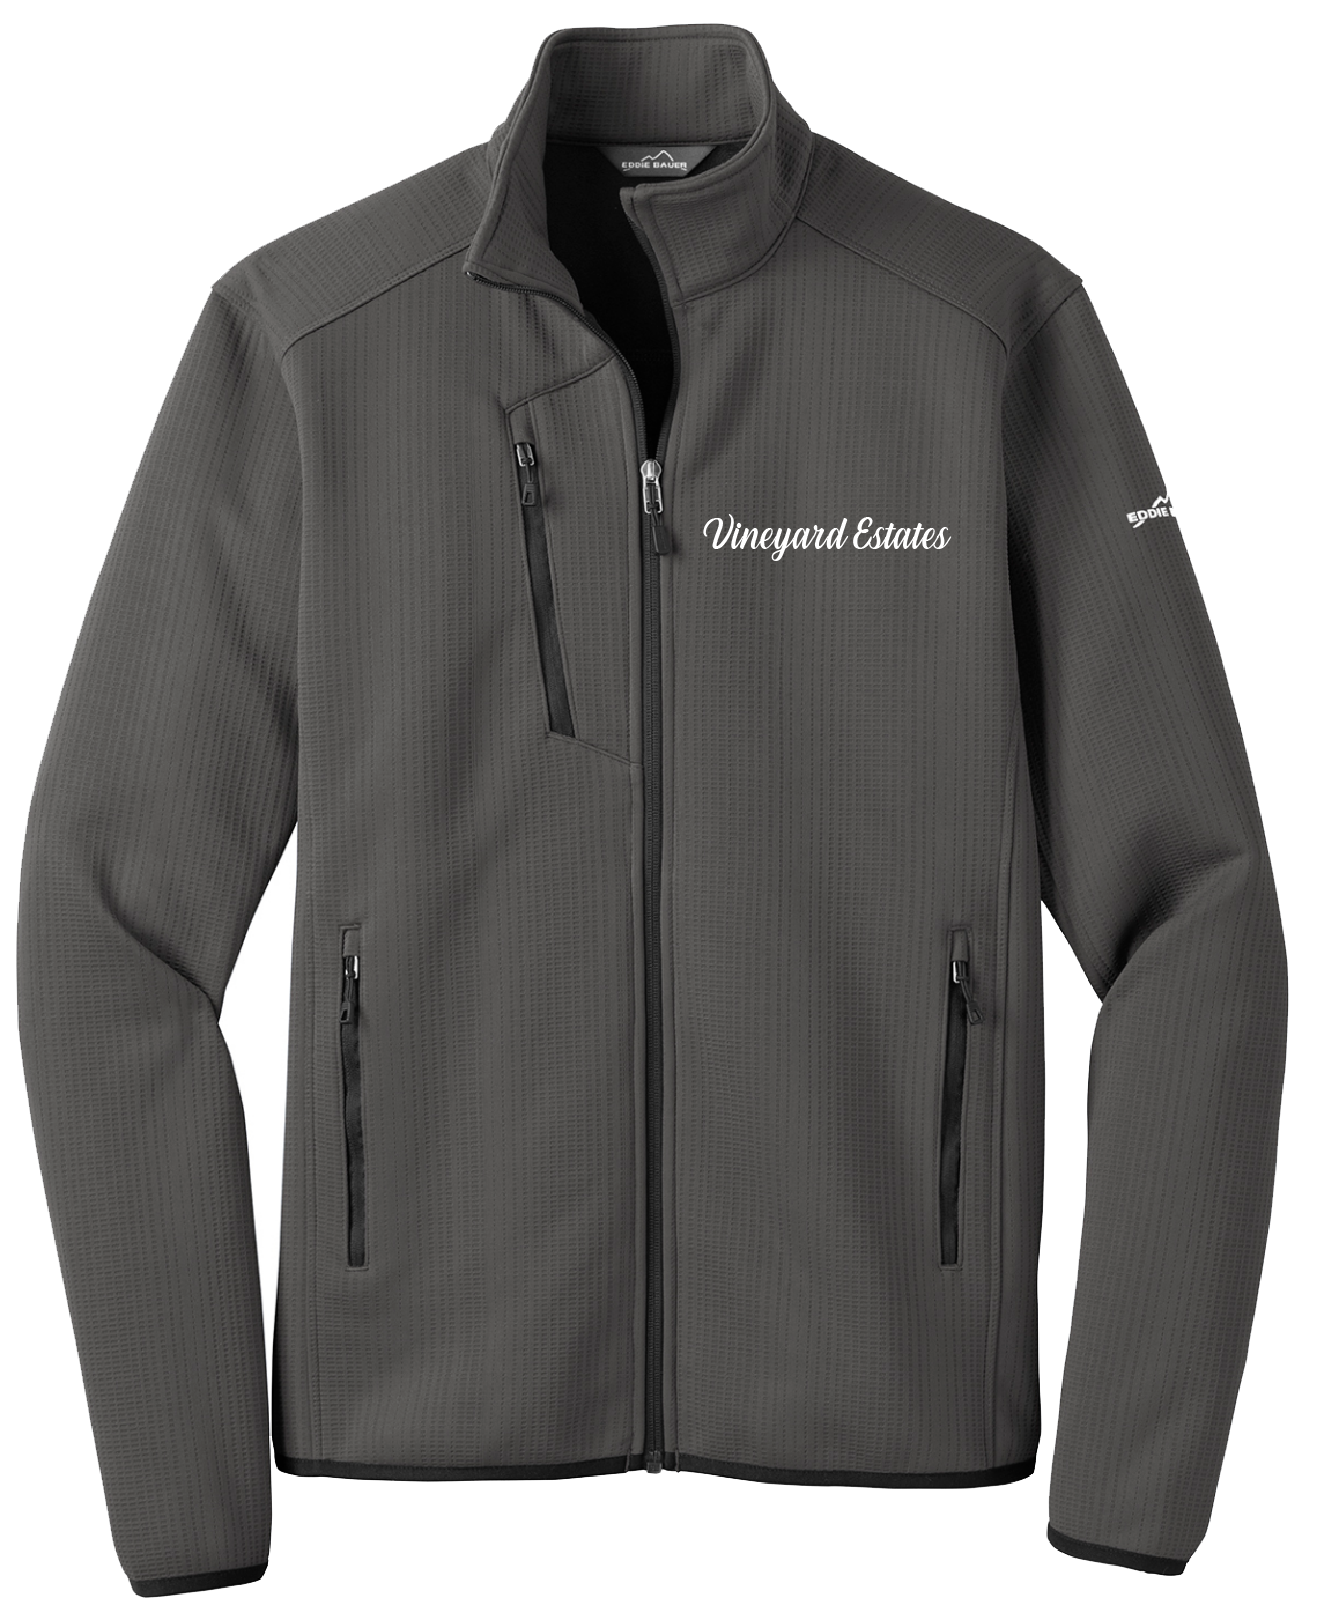 Vineyard Estates - Mens - Eddie Bauer ® Dash Full-Zip Fleece Jacket